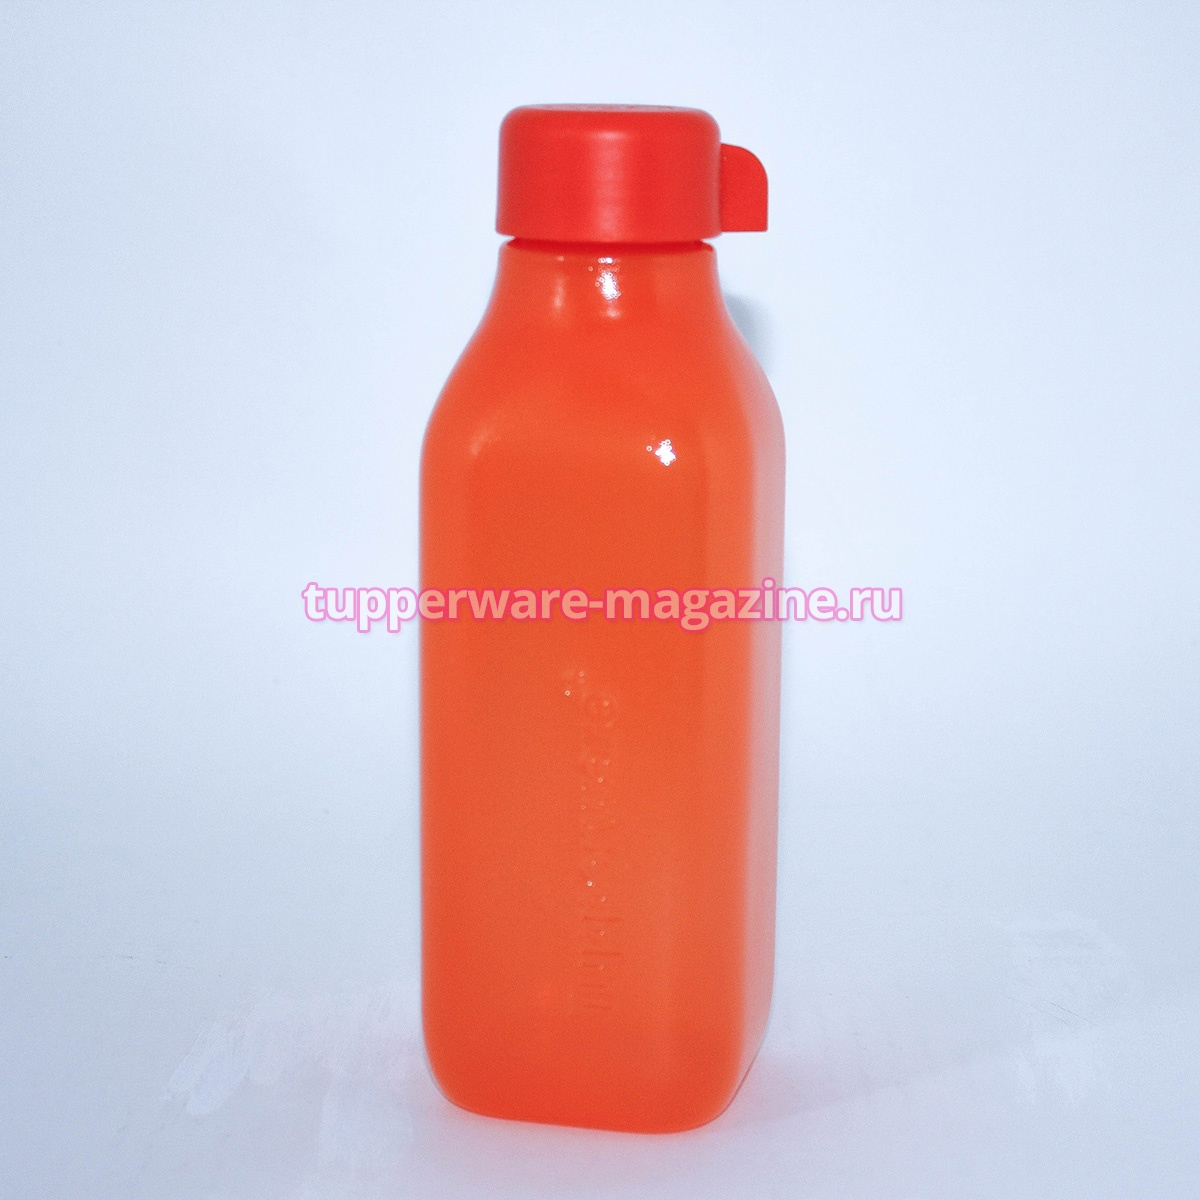 Эко-бутылка (500 мл) в оранжевом цвете без клапана